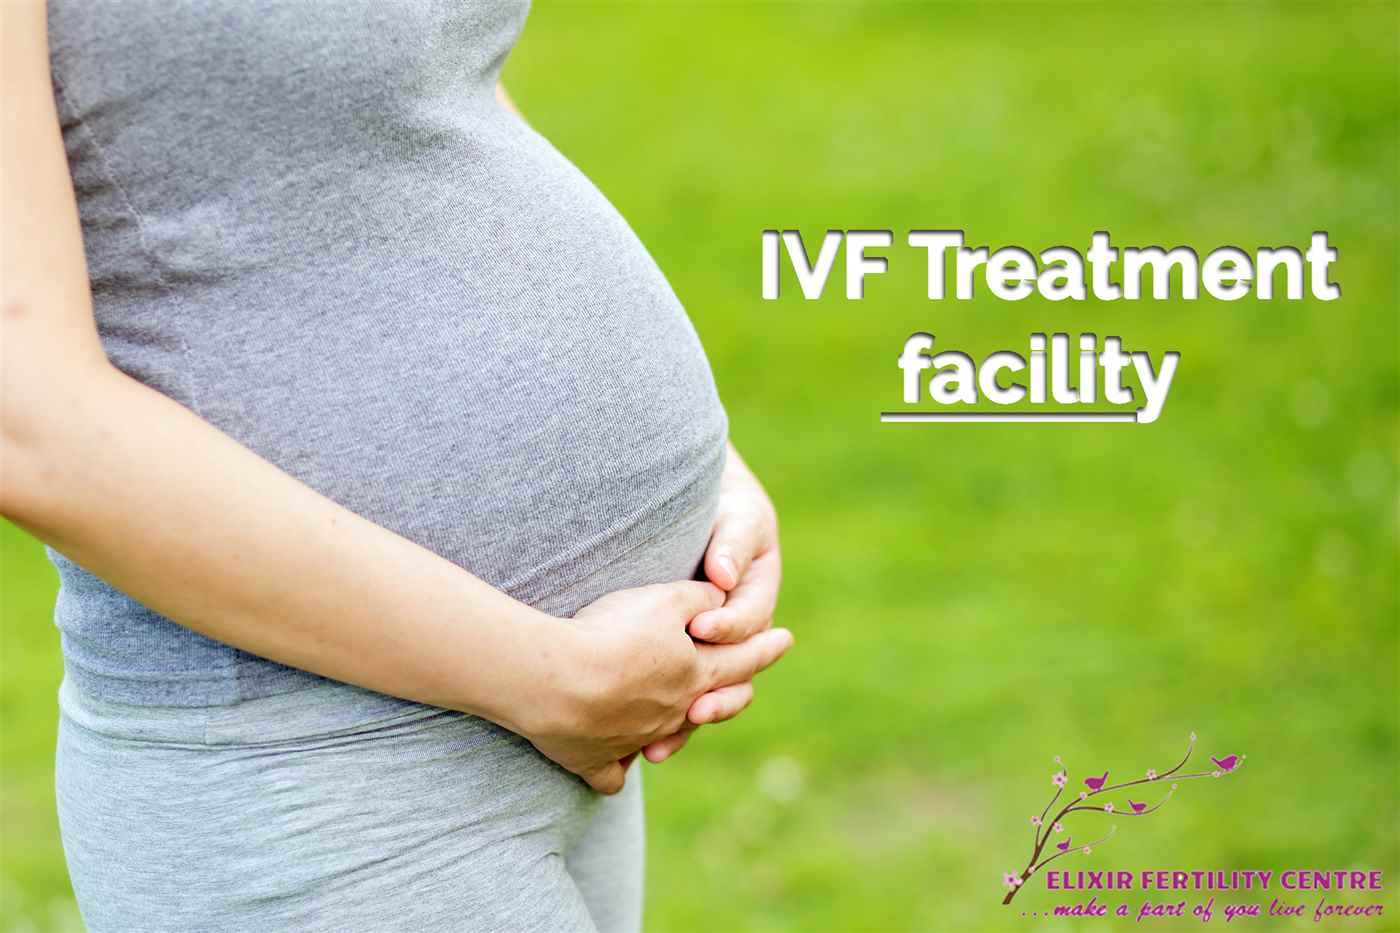 Elixir fertility_IVF treatment